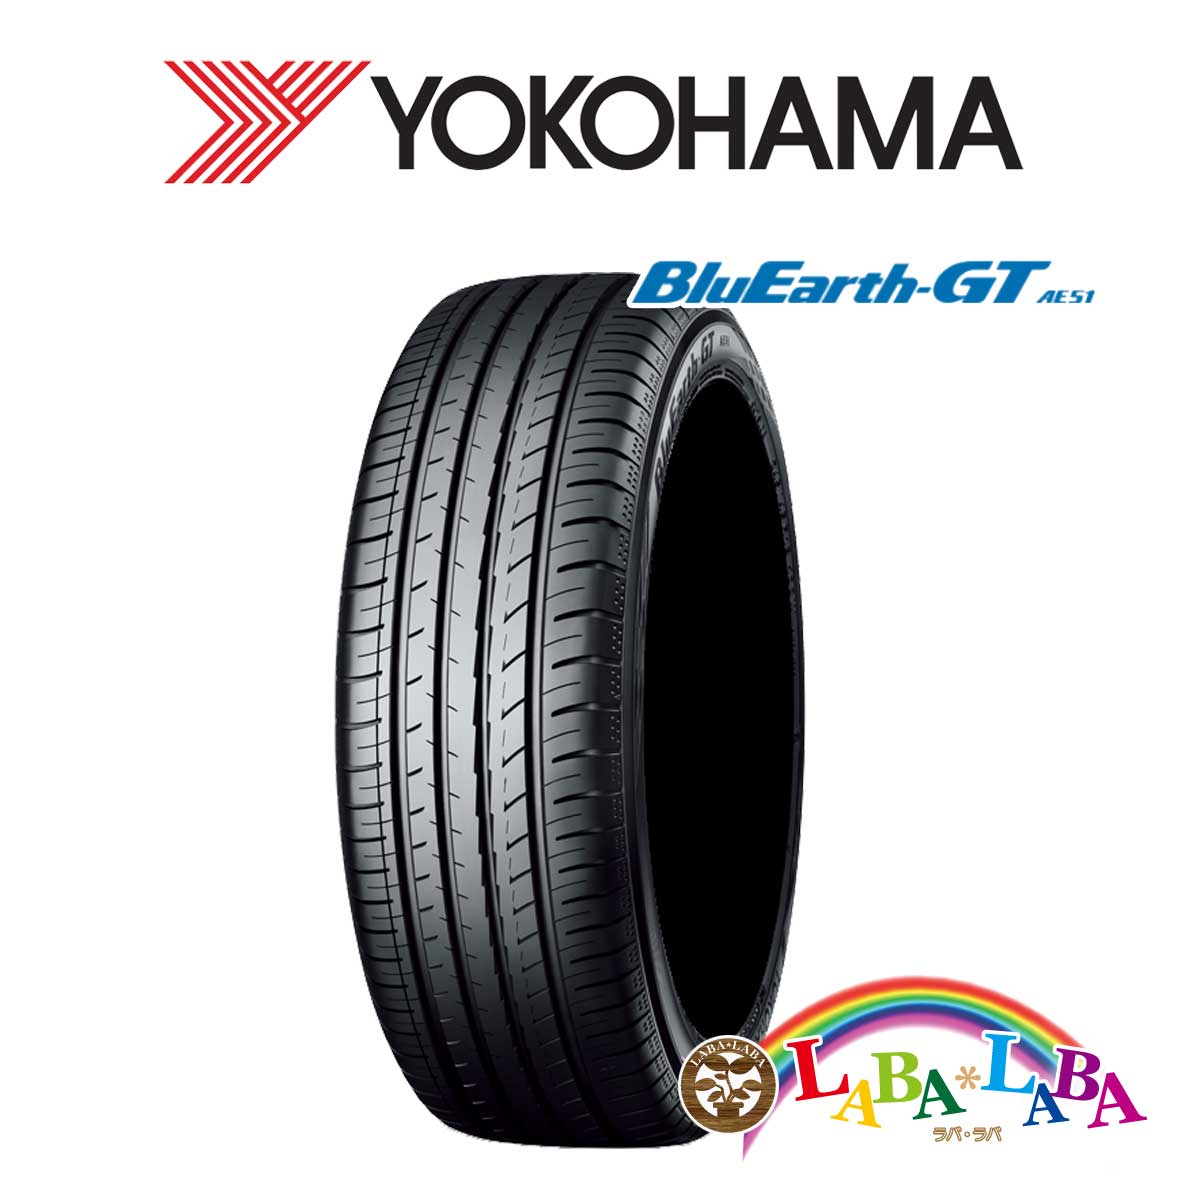 ランキング2022 爆安 送料無料 国産タイヤ サマータイヤ 新品 タイヤのみ 4本SET YOKOHAMA ヨコハマ ブルーアース 65R15 4本セット AE51 205 BluEarth-GT 94H